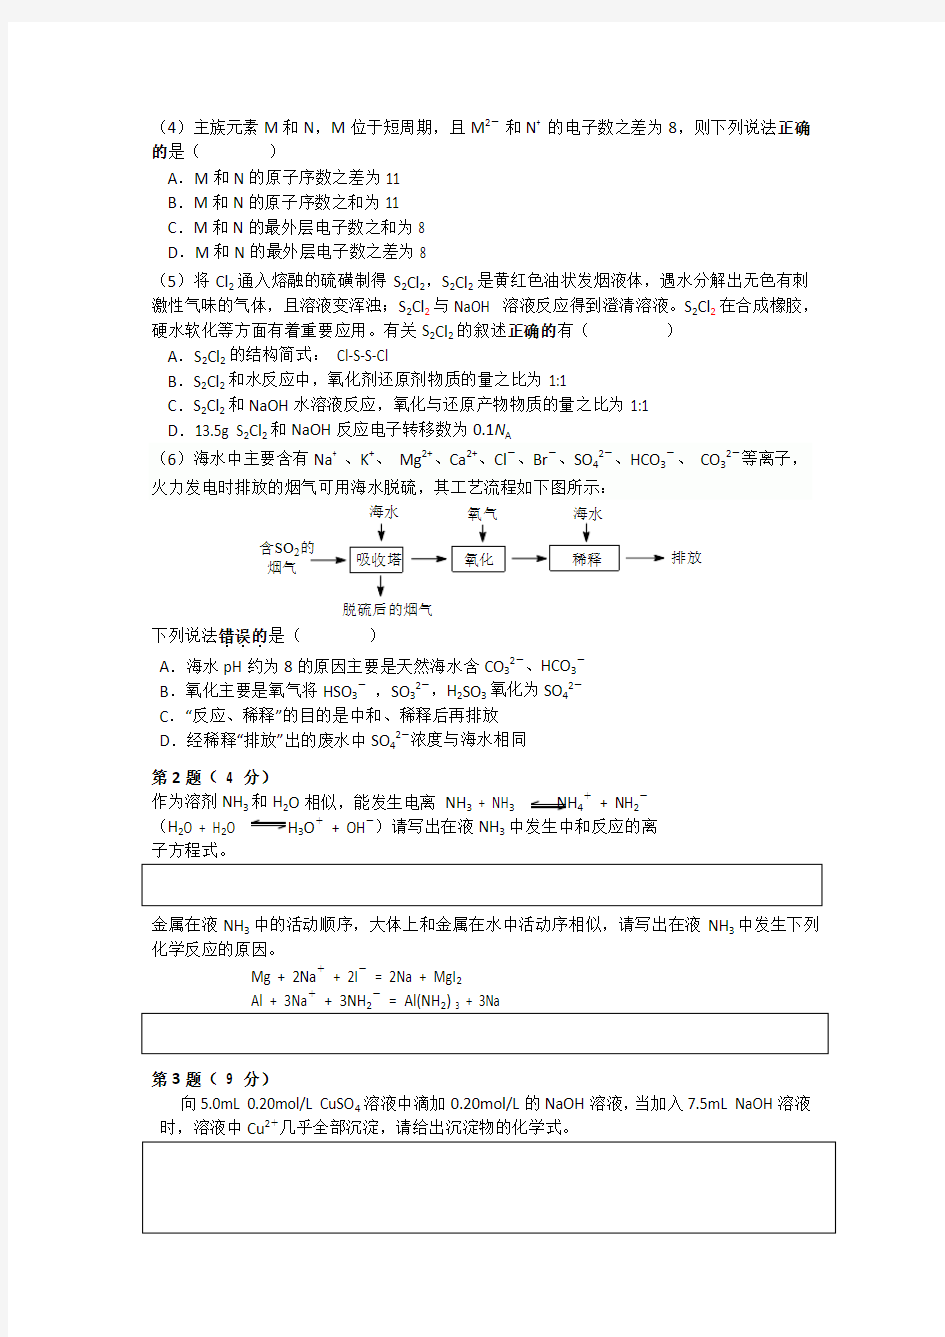 2013年北京市高中学生高一高二化学竞赛试卷及答案